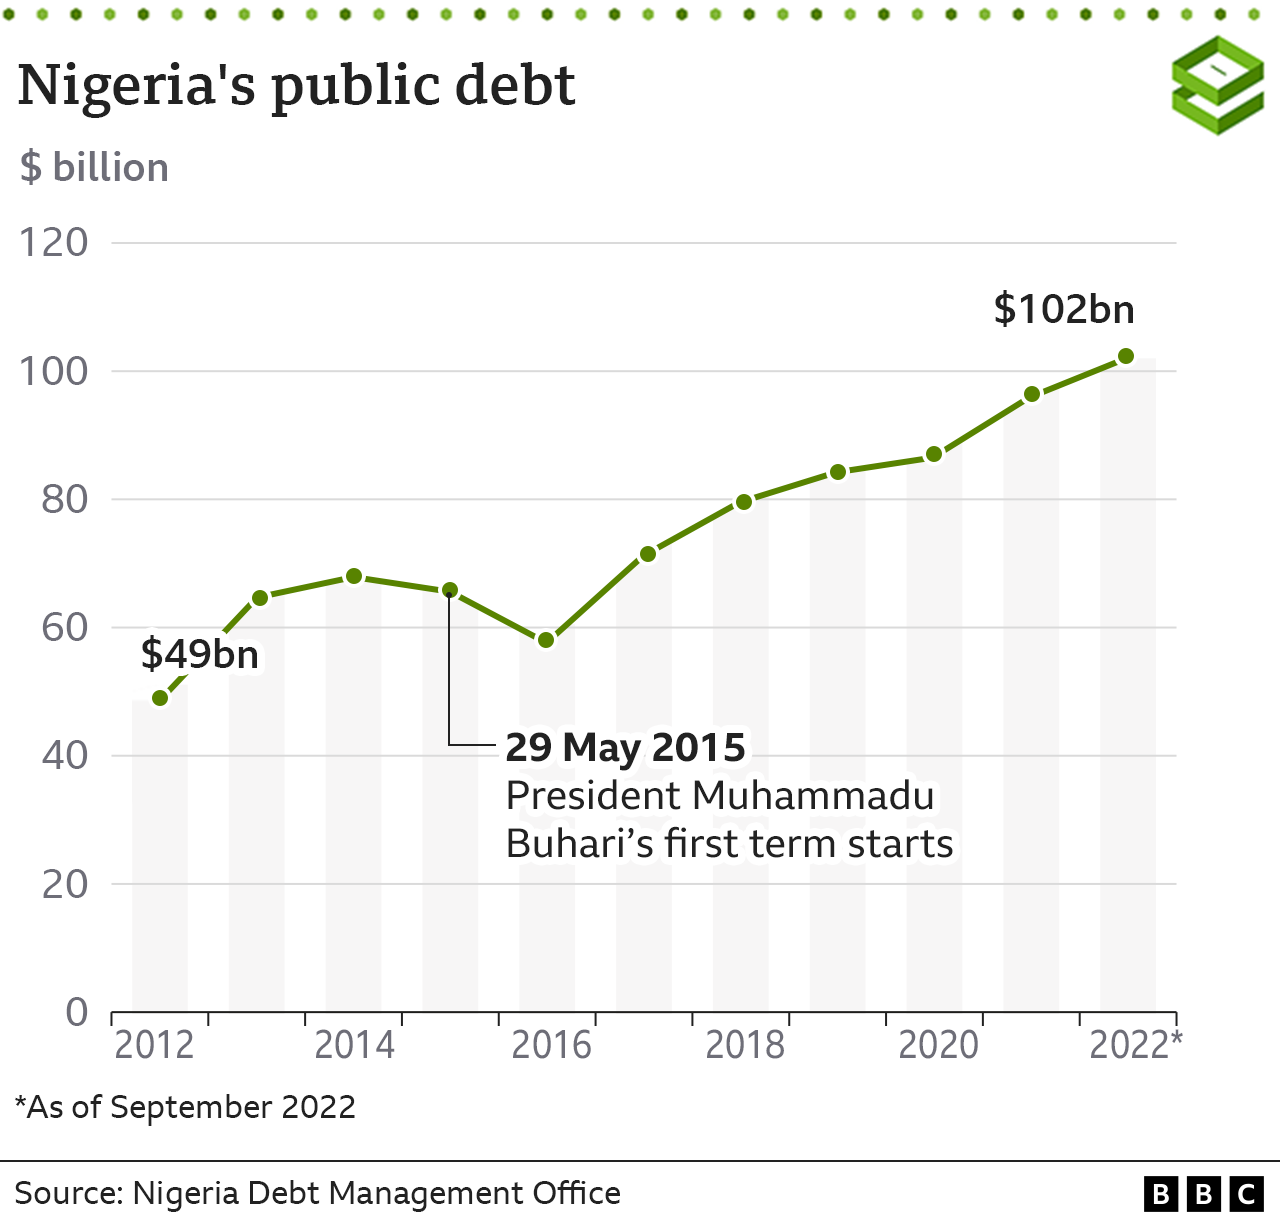 Grafik der nigerianischen Staatsverschuldung im Zeitverlauf